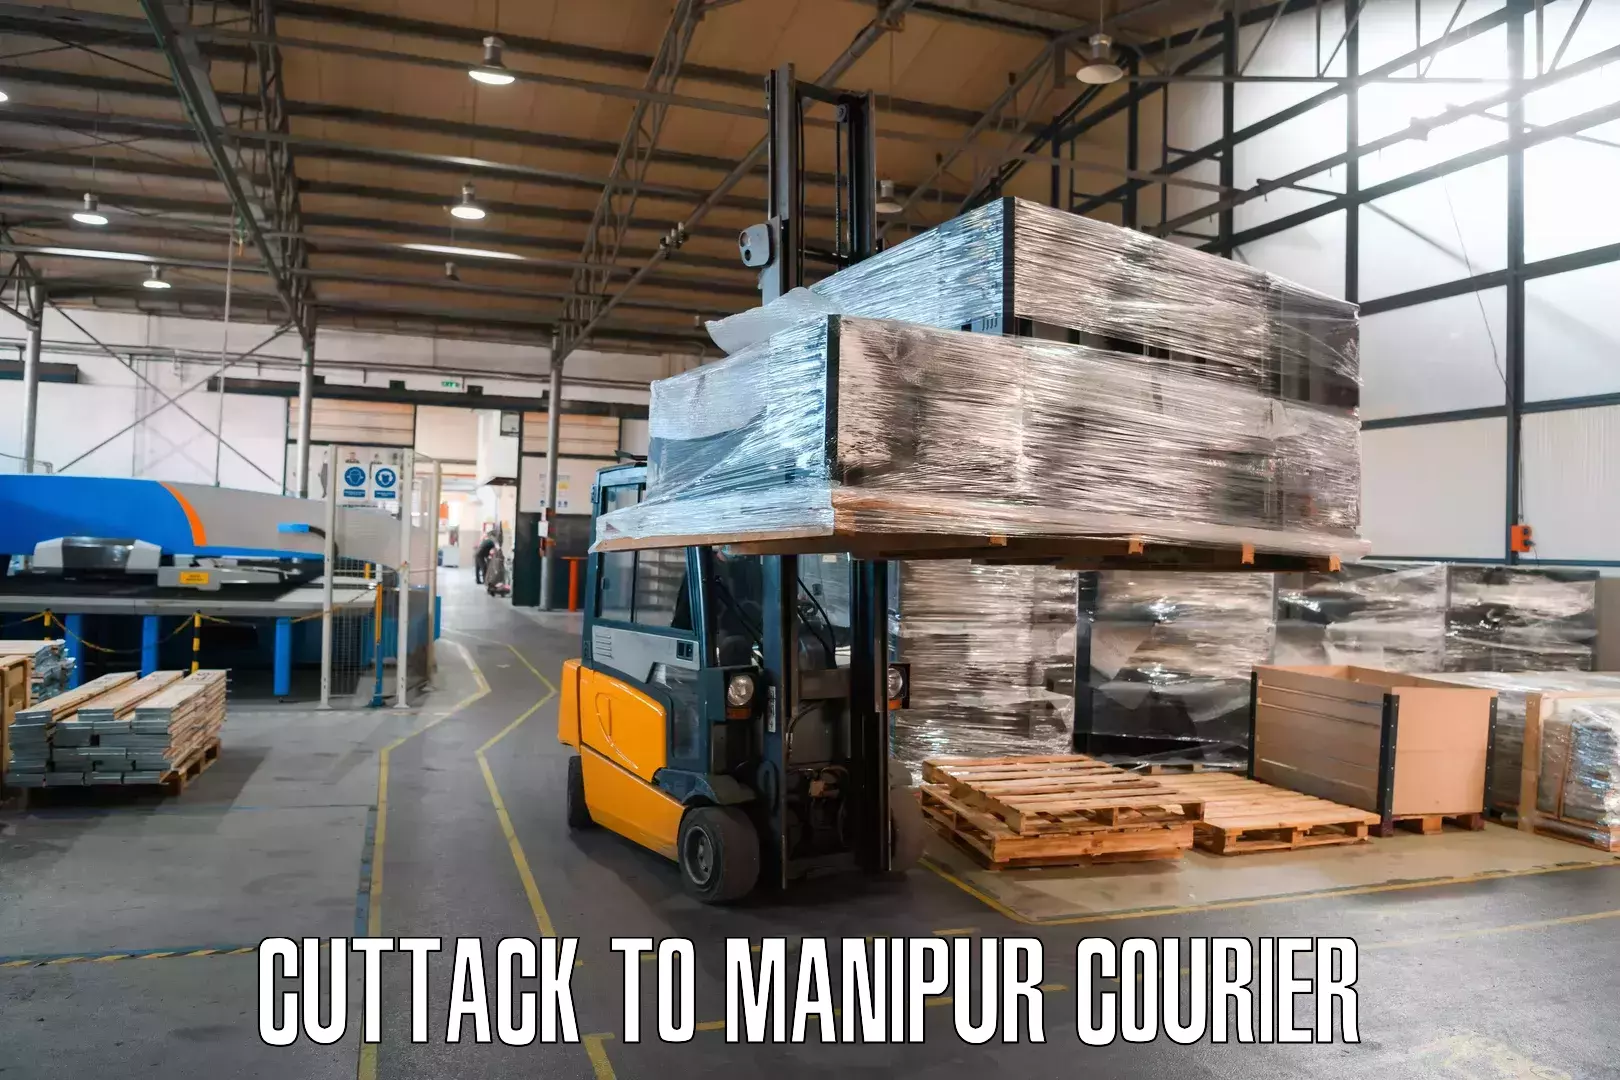 Premium courier solutions Cuttack to Churachandpur